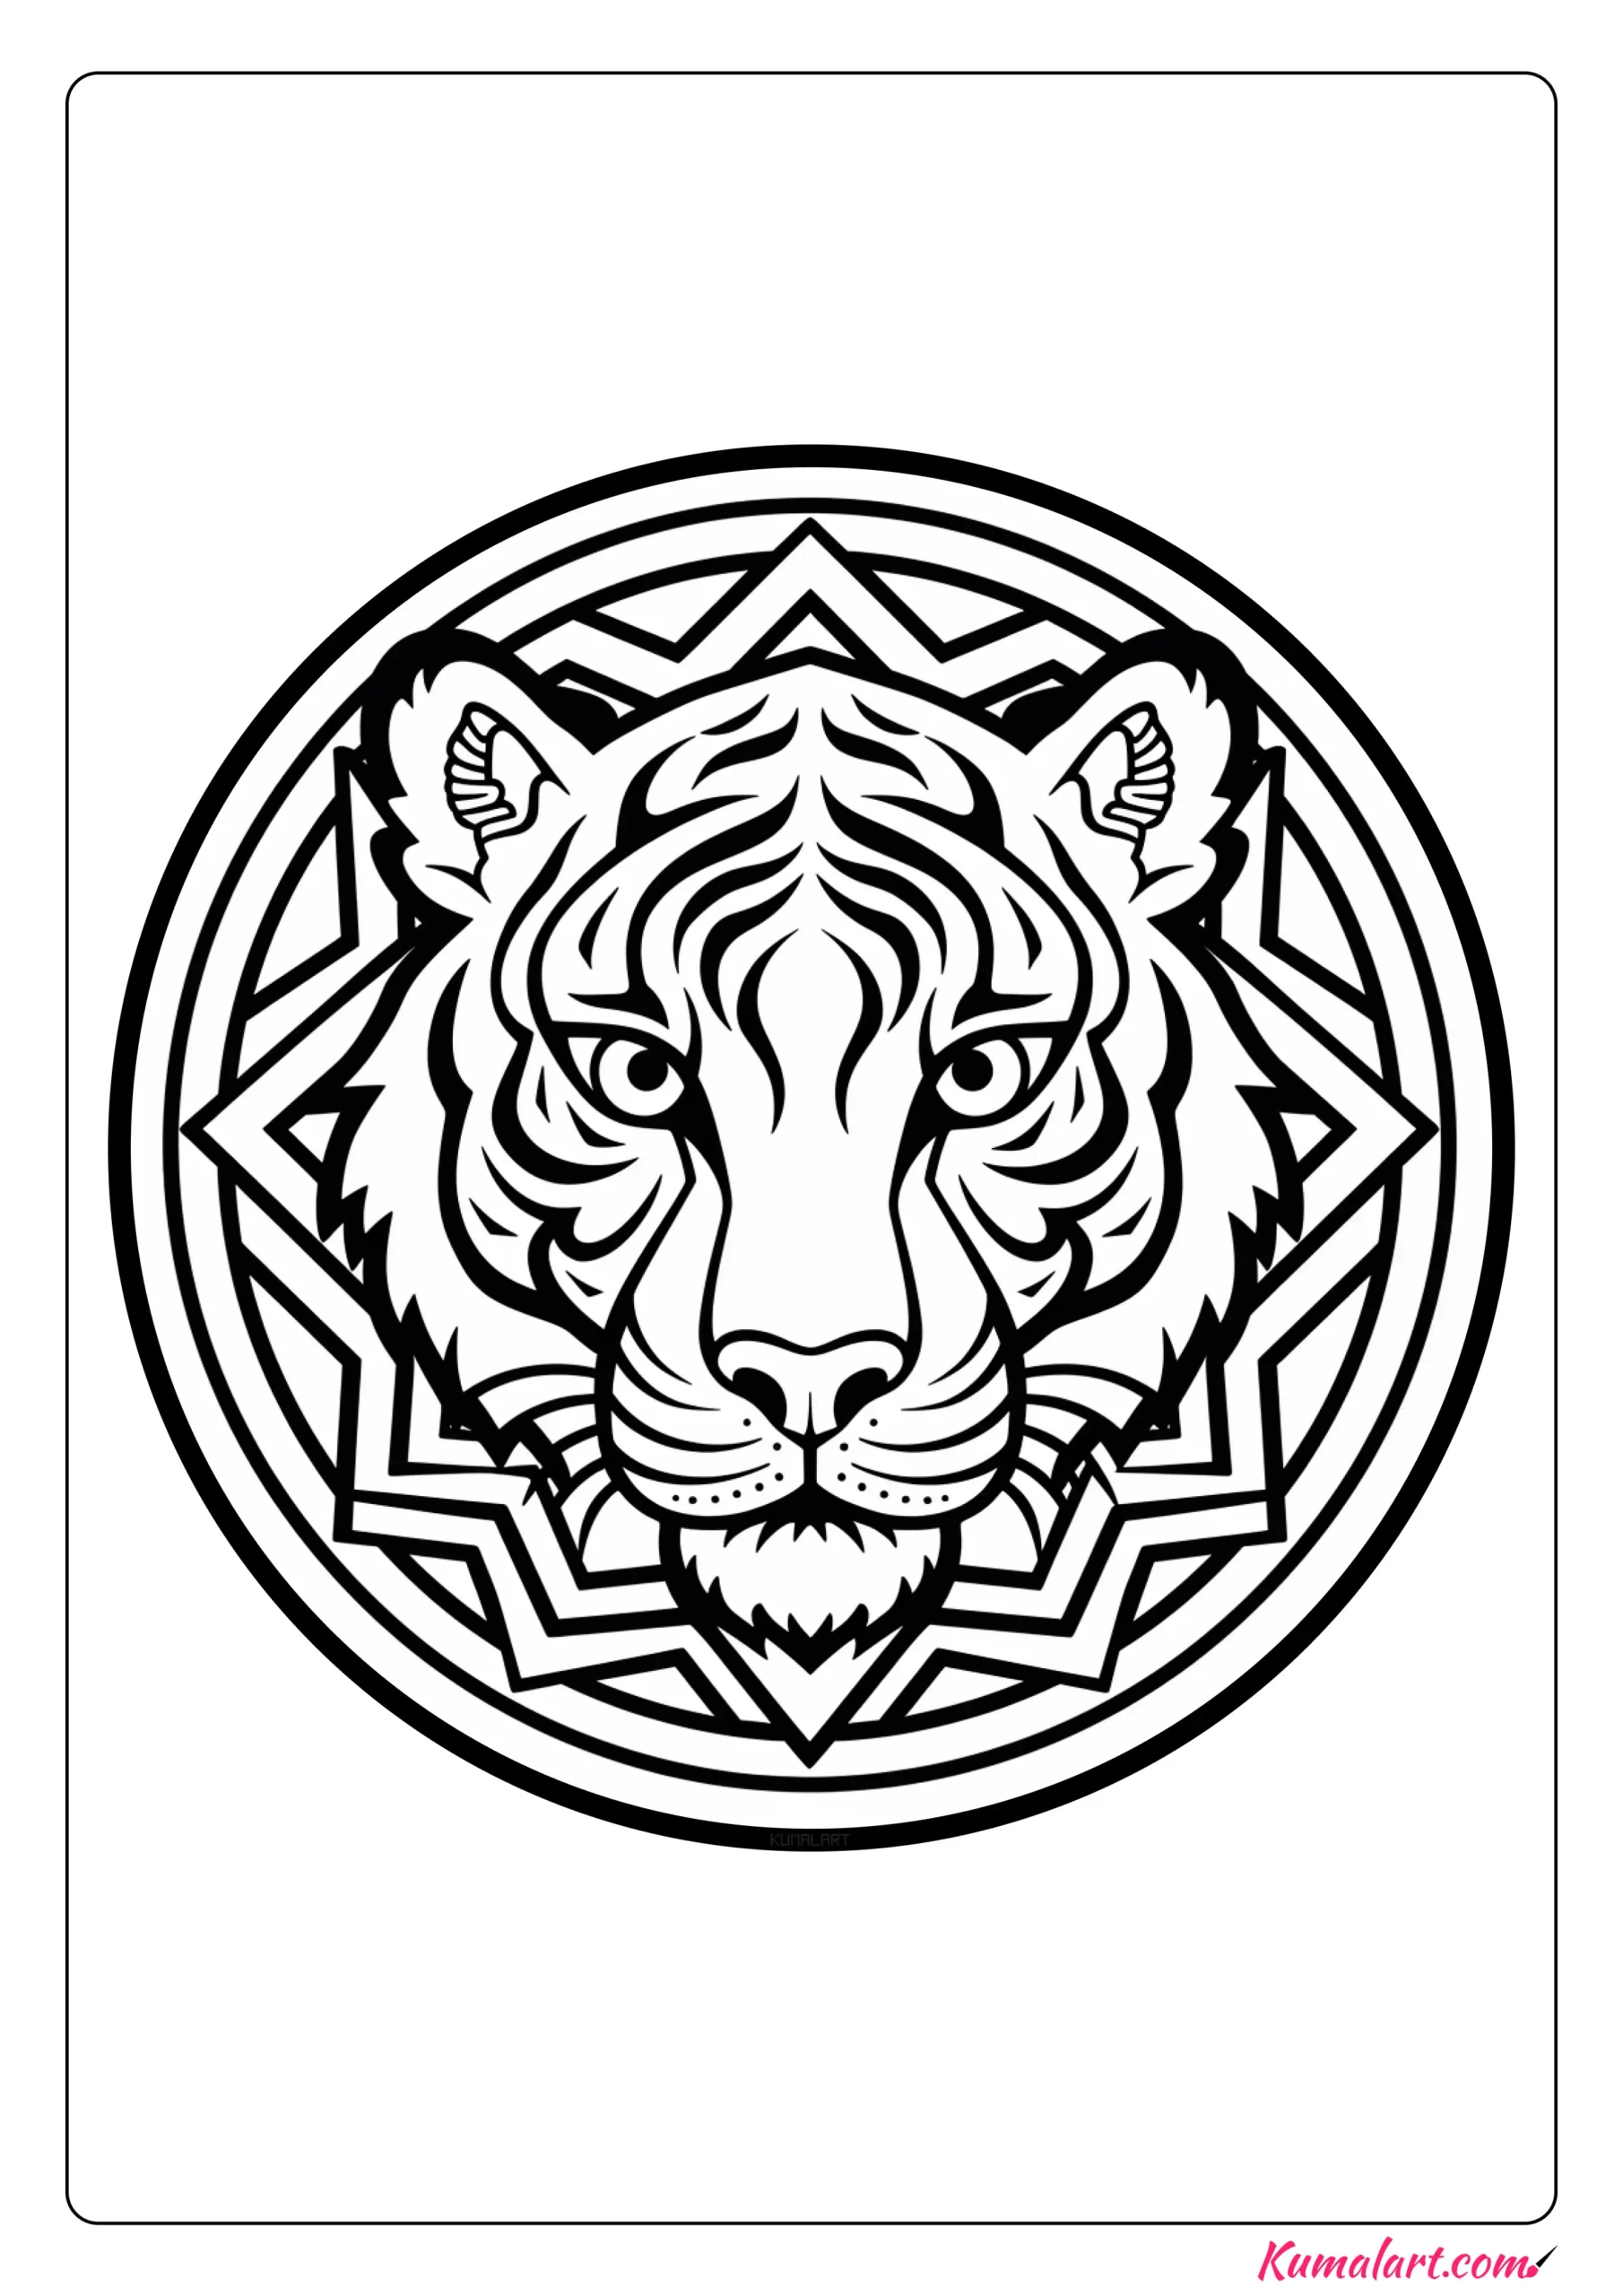 Jo the Tiger Mandala Coloring Page